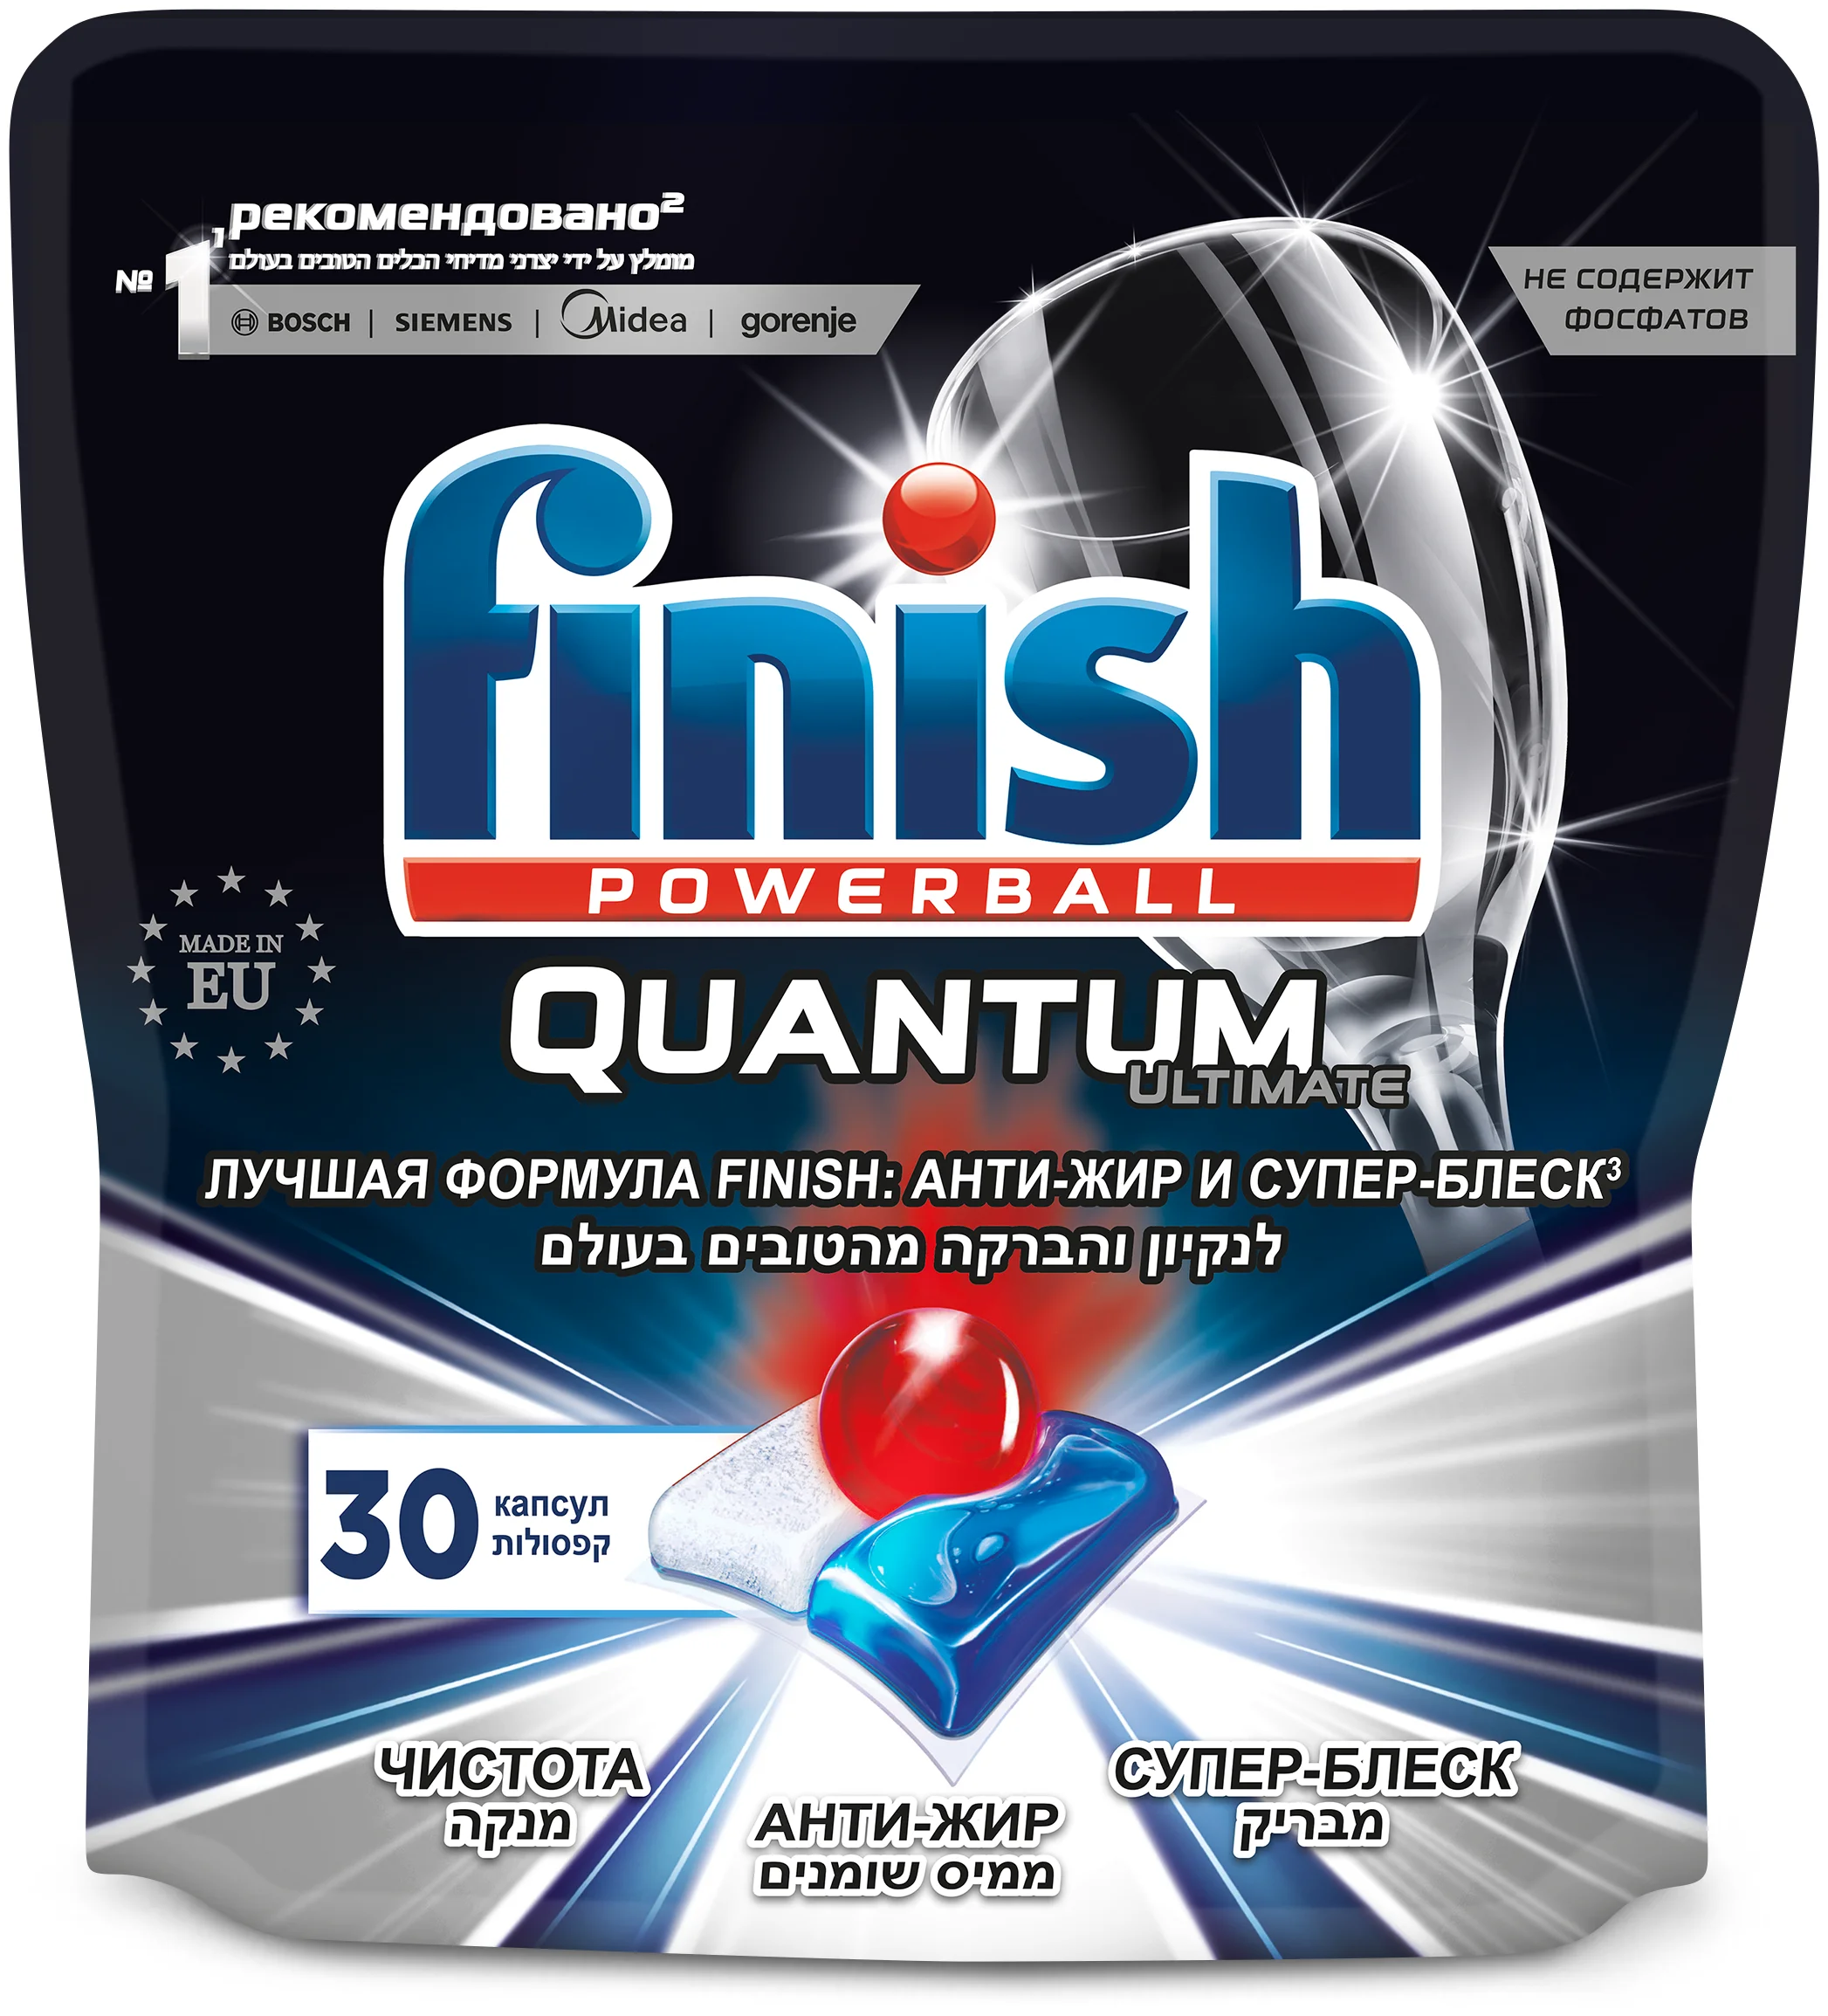 Finish Quantum Ultimate (original) дойпак - содержит: активный кислород, энзимы